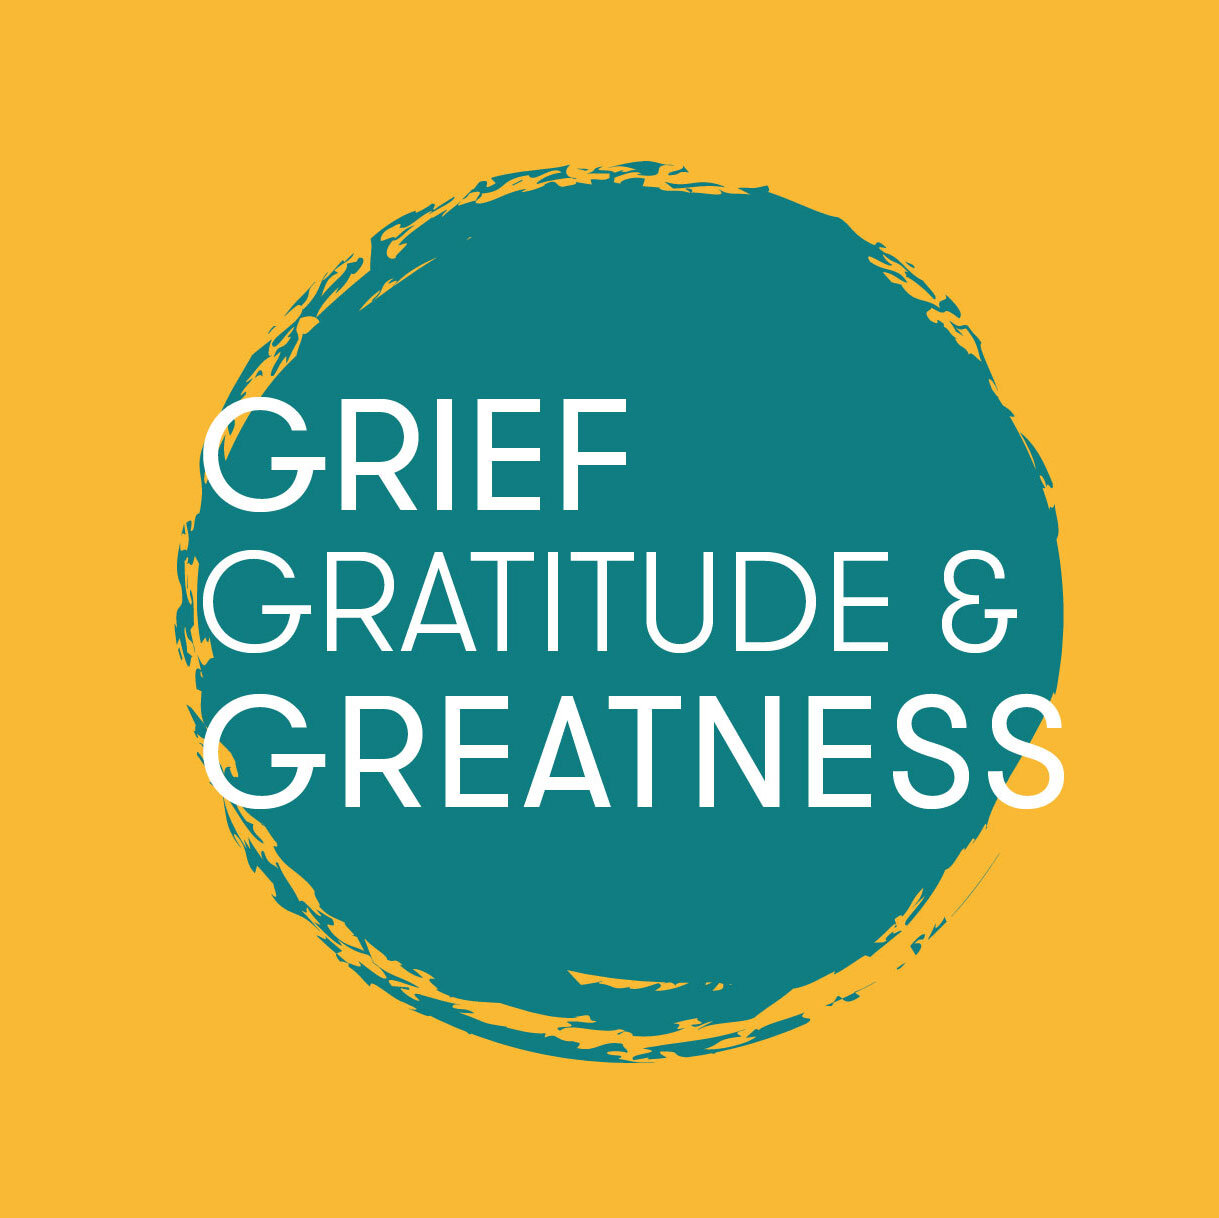 Grief Gratitude & Greatness